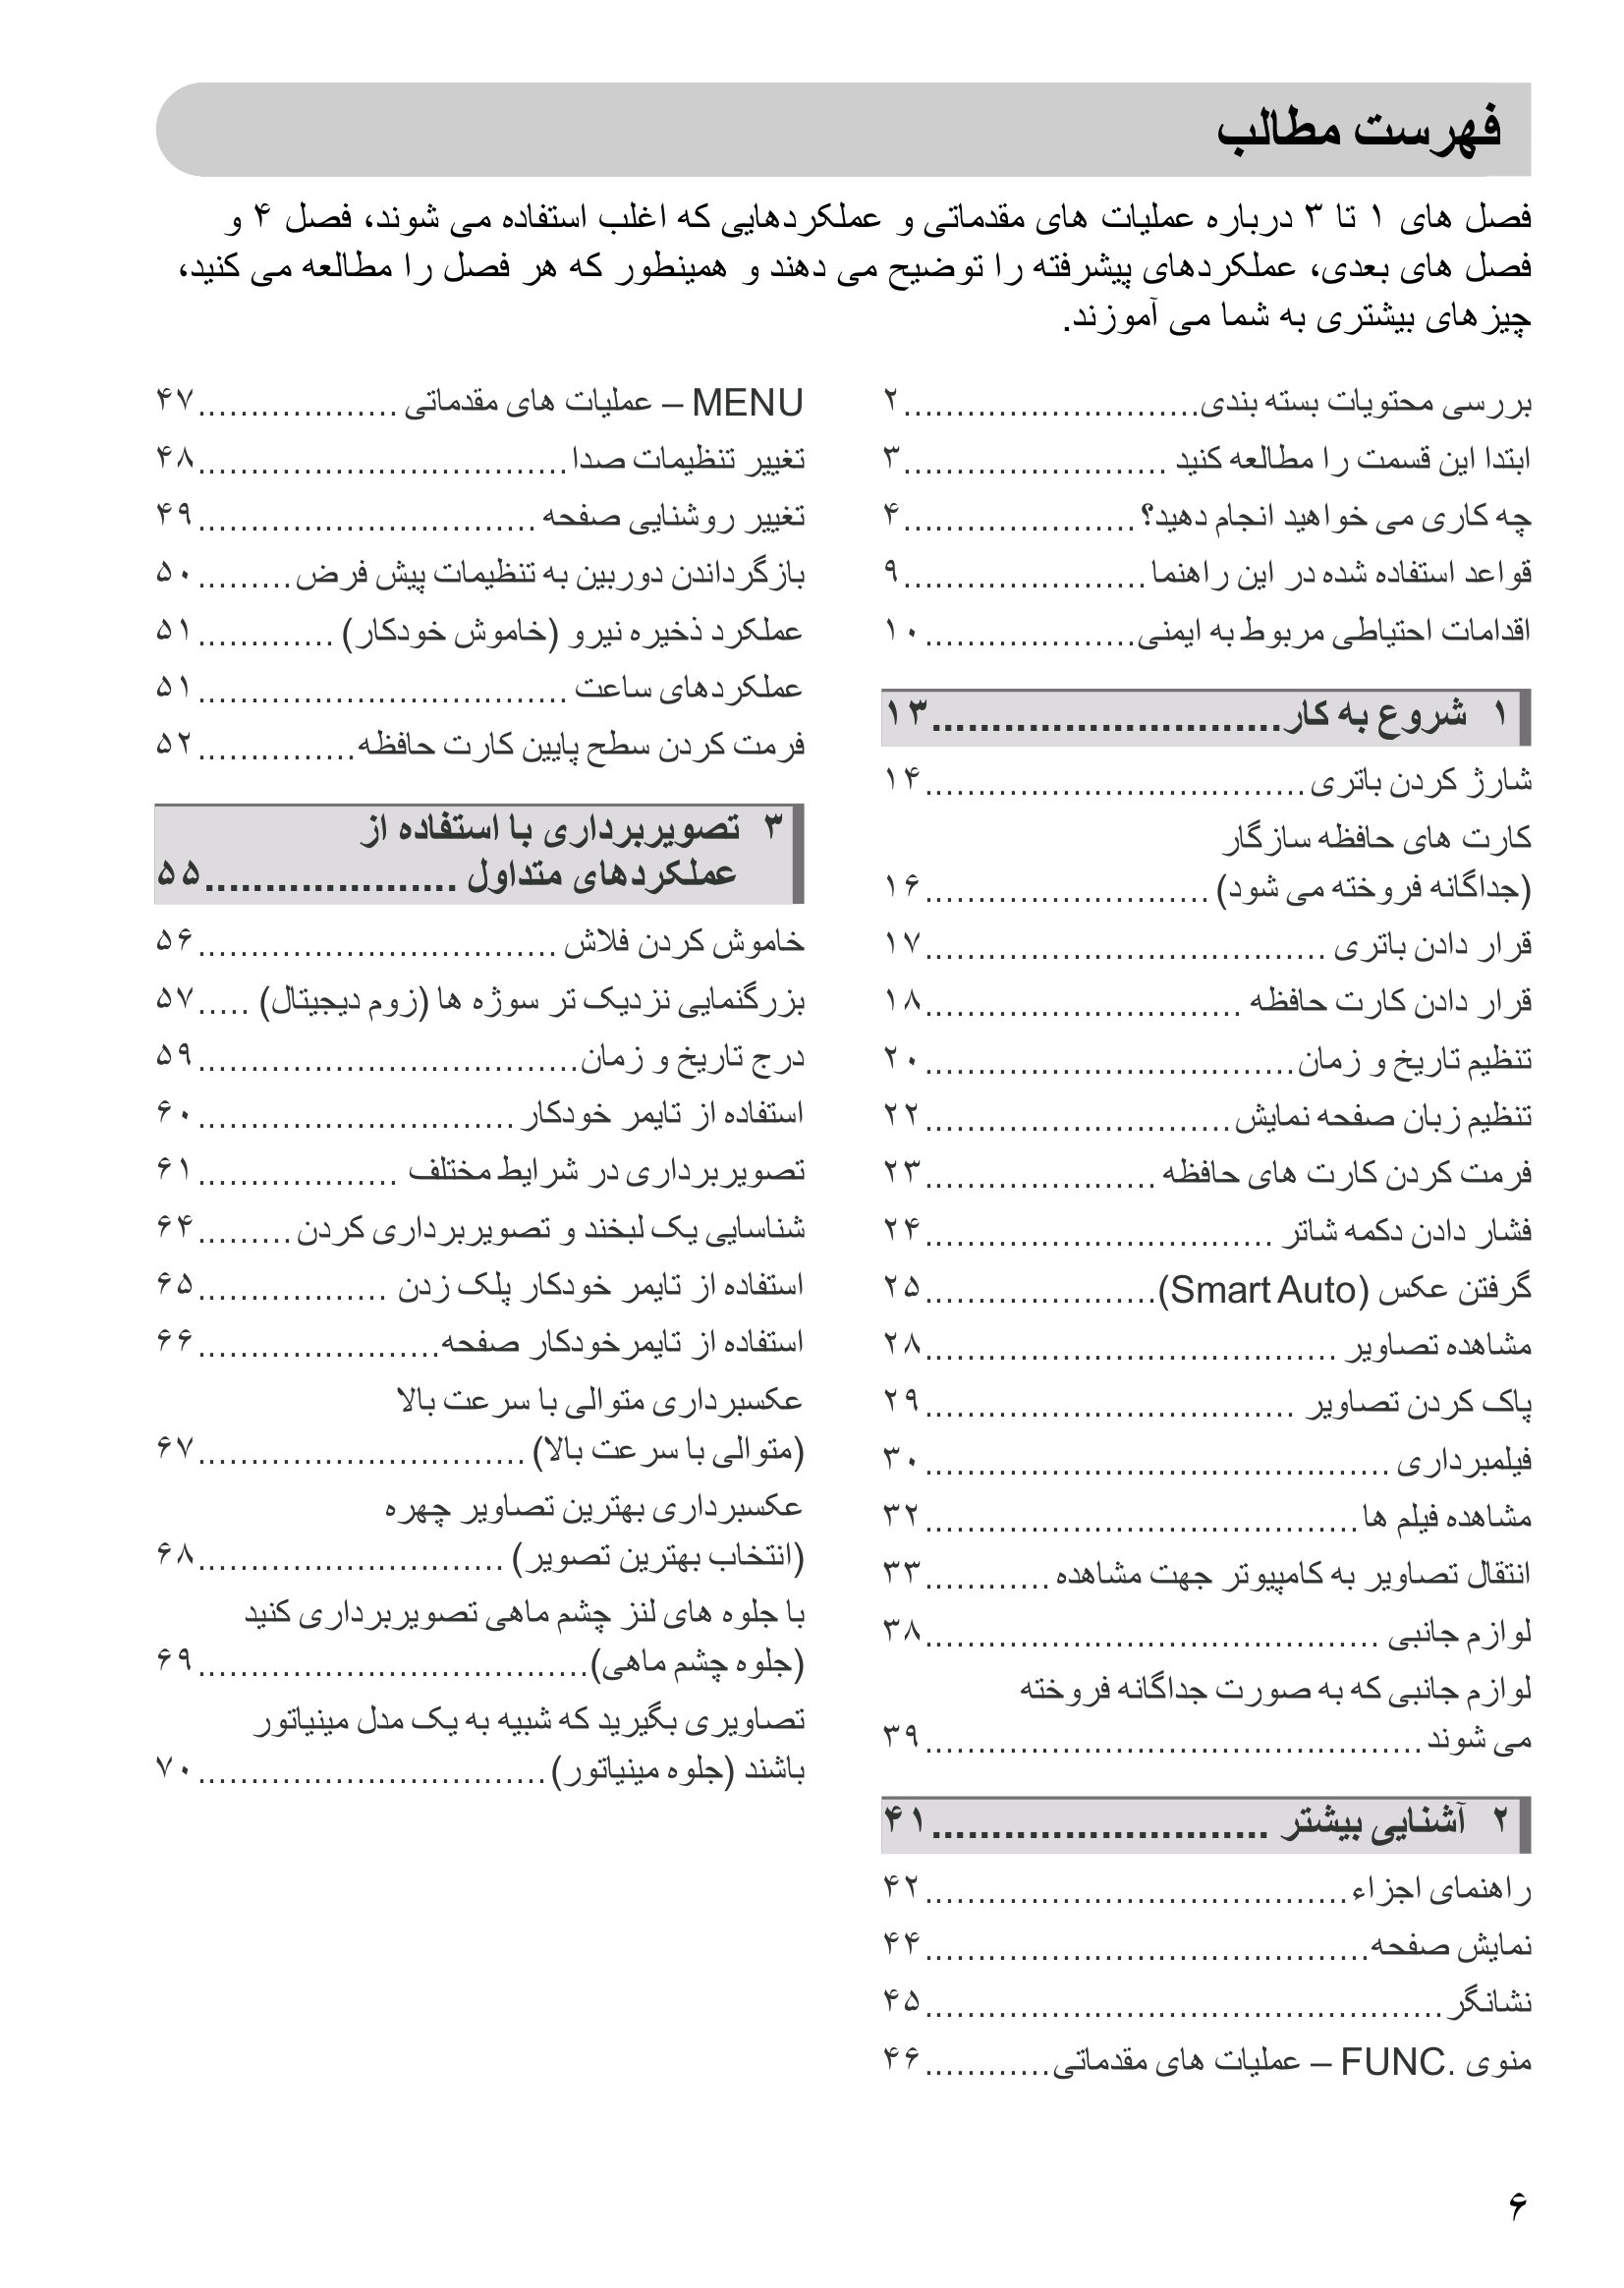 دانلود دفترچه راهنمای فارسی دوربین کنون 1000HS